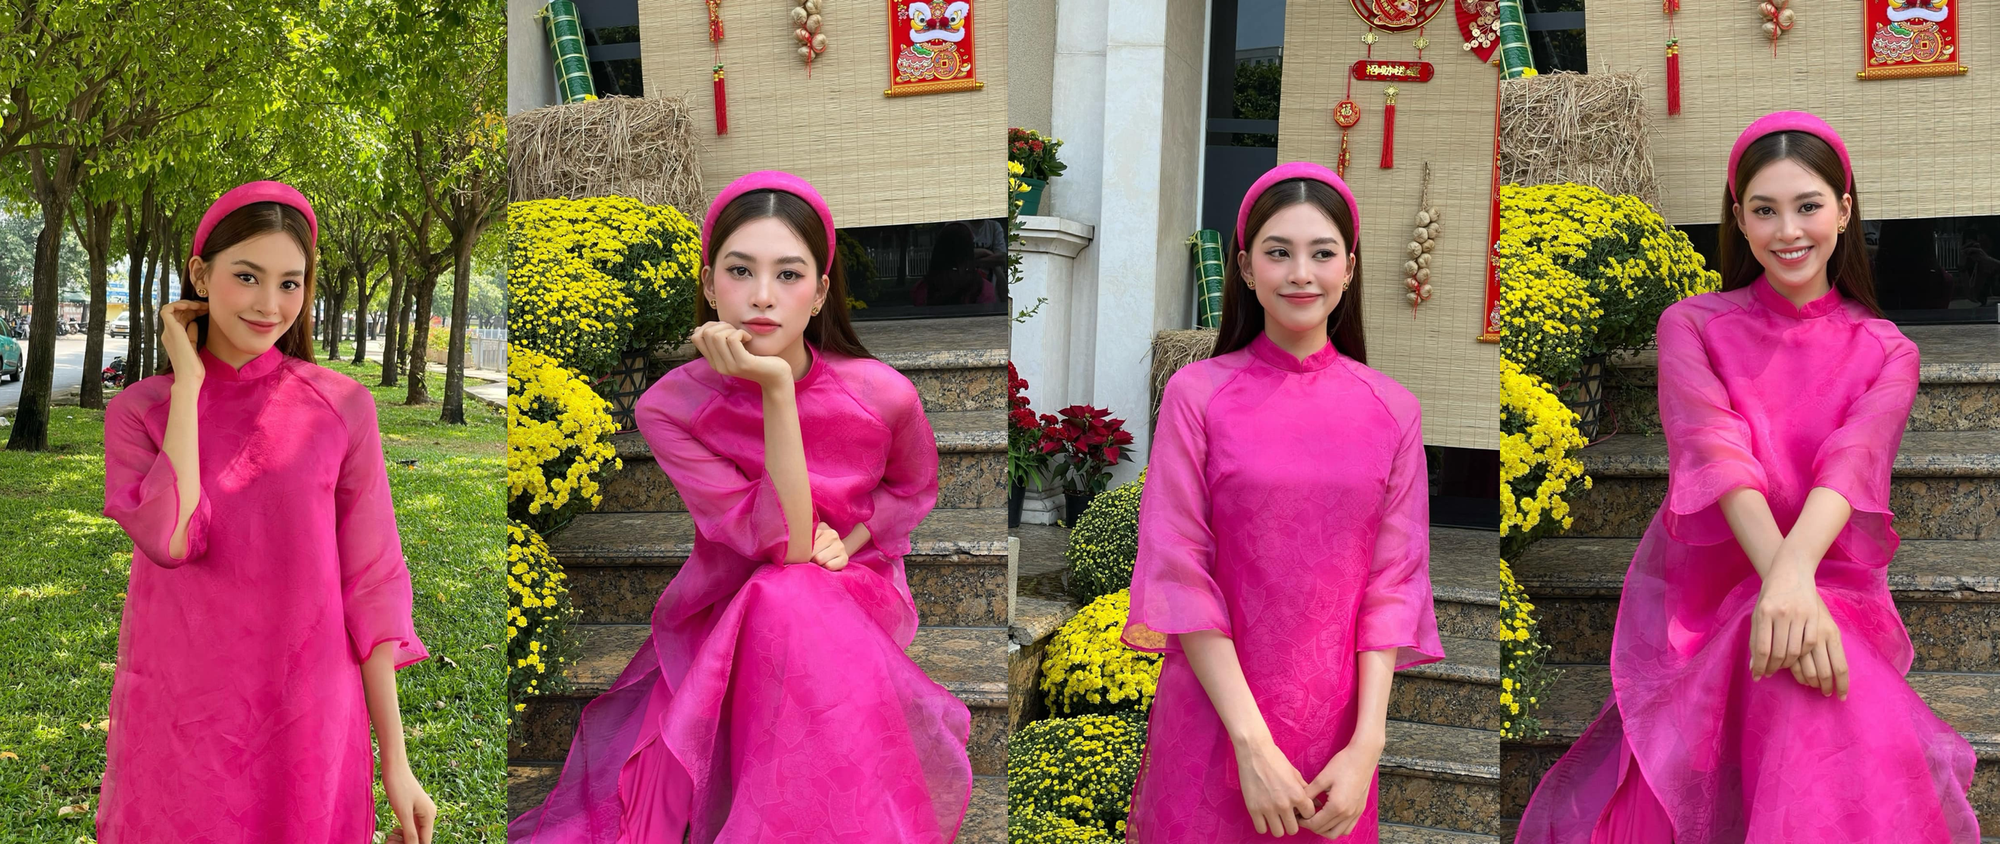 Giáp Tết mỹ nhân Việt đua nhau diện áo dài: Ai cũng hoá 